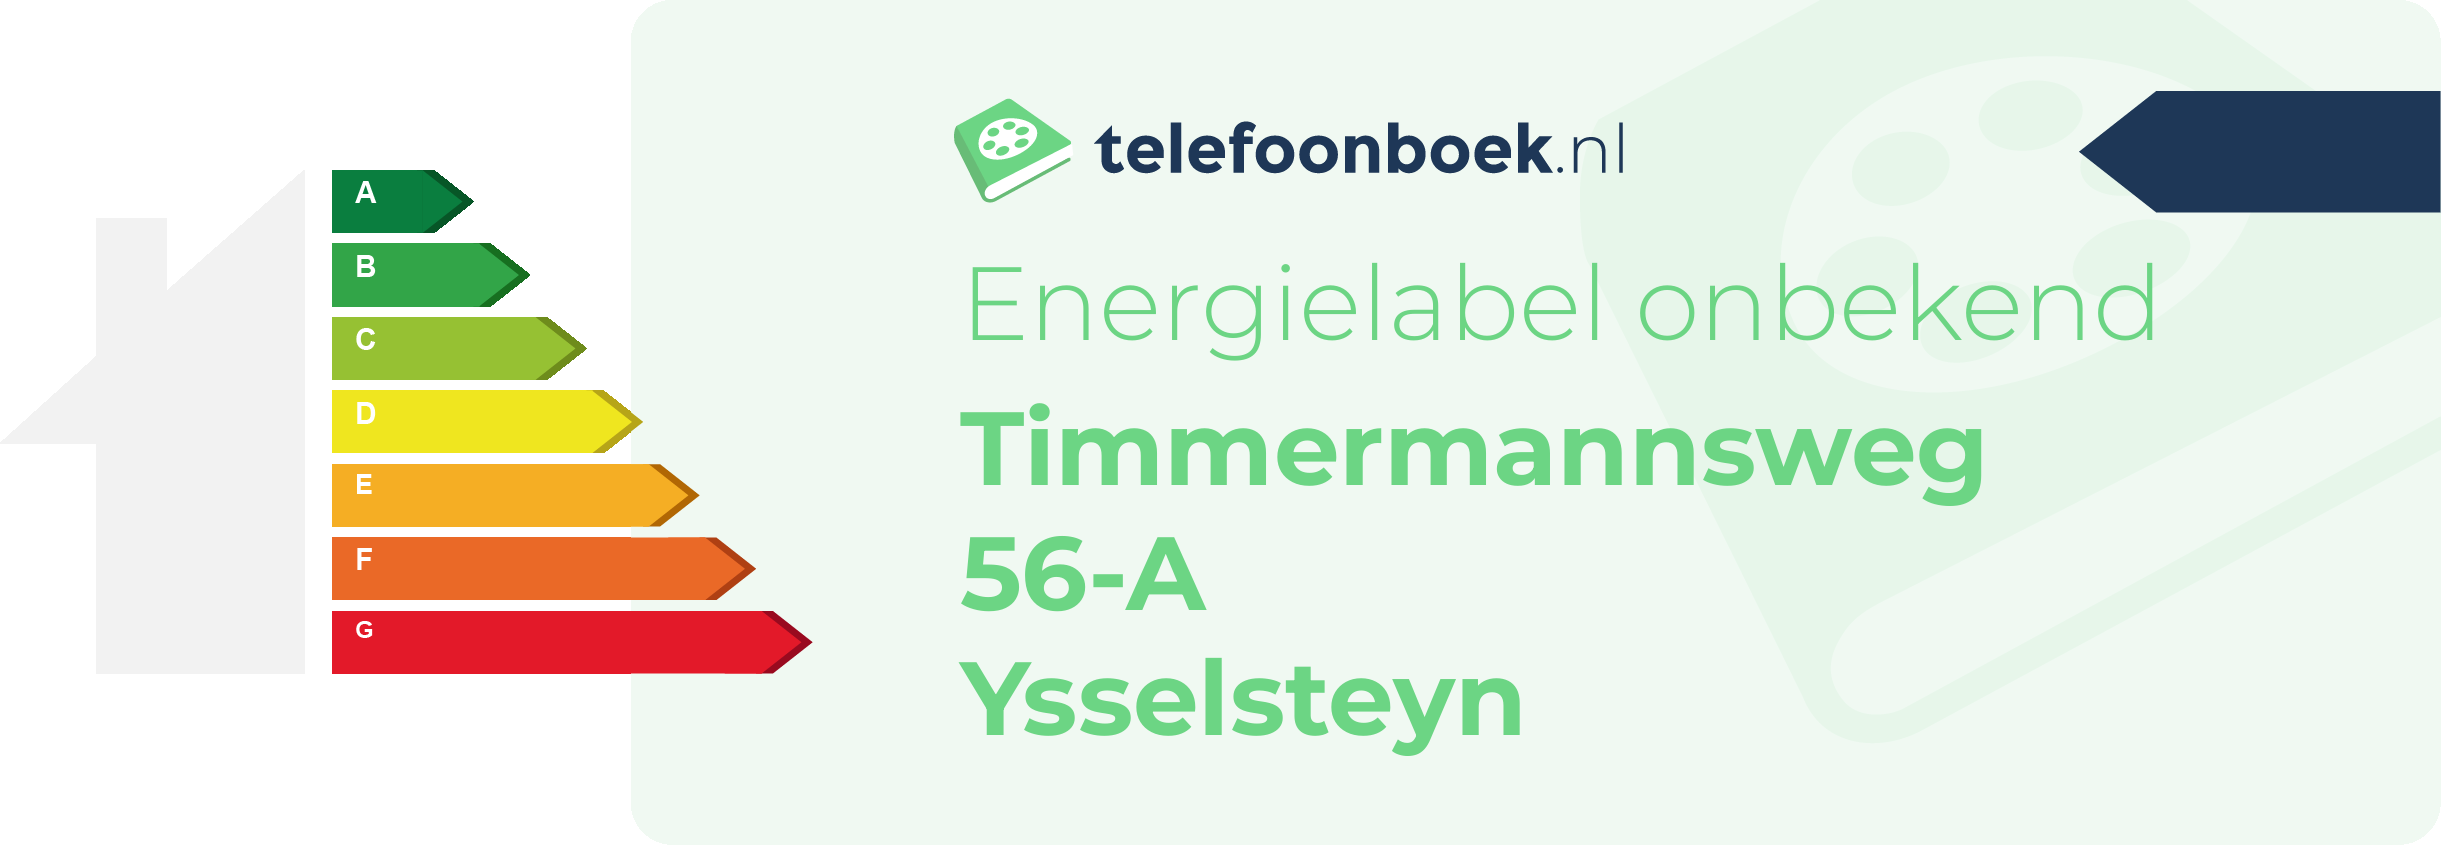 Energielabel Timmermannsweg 56-A Ysselsteyn